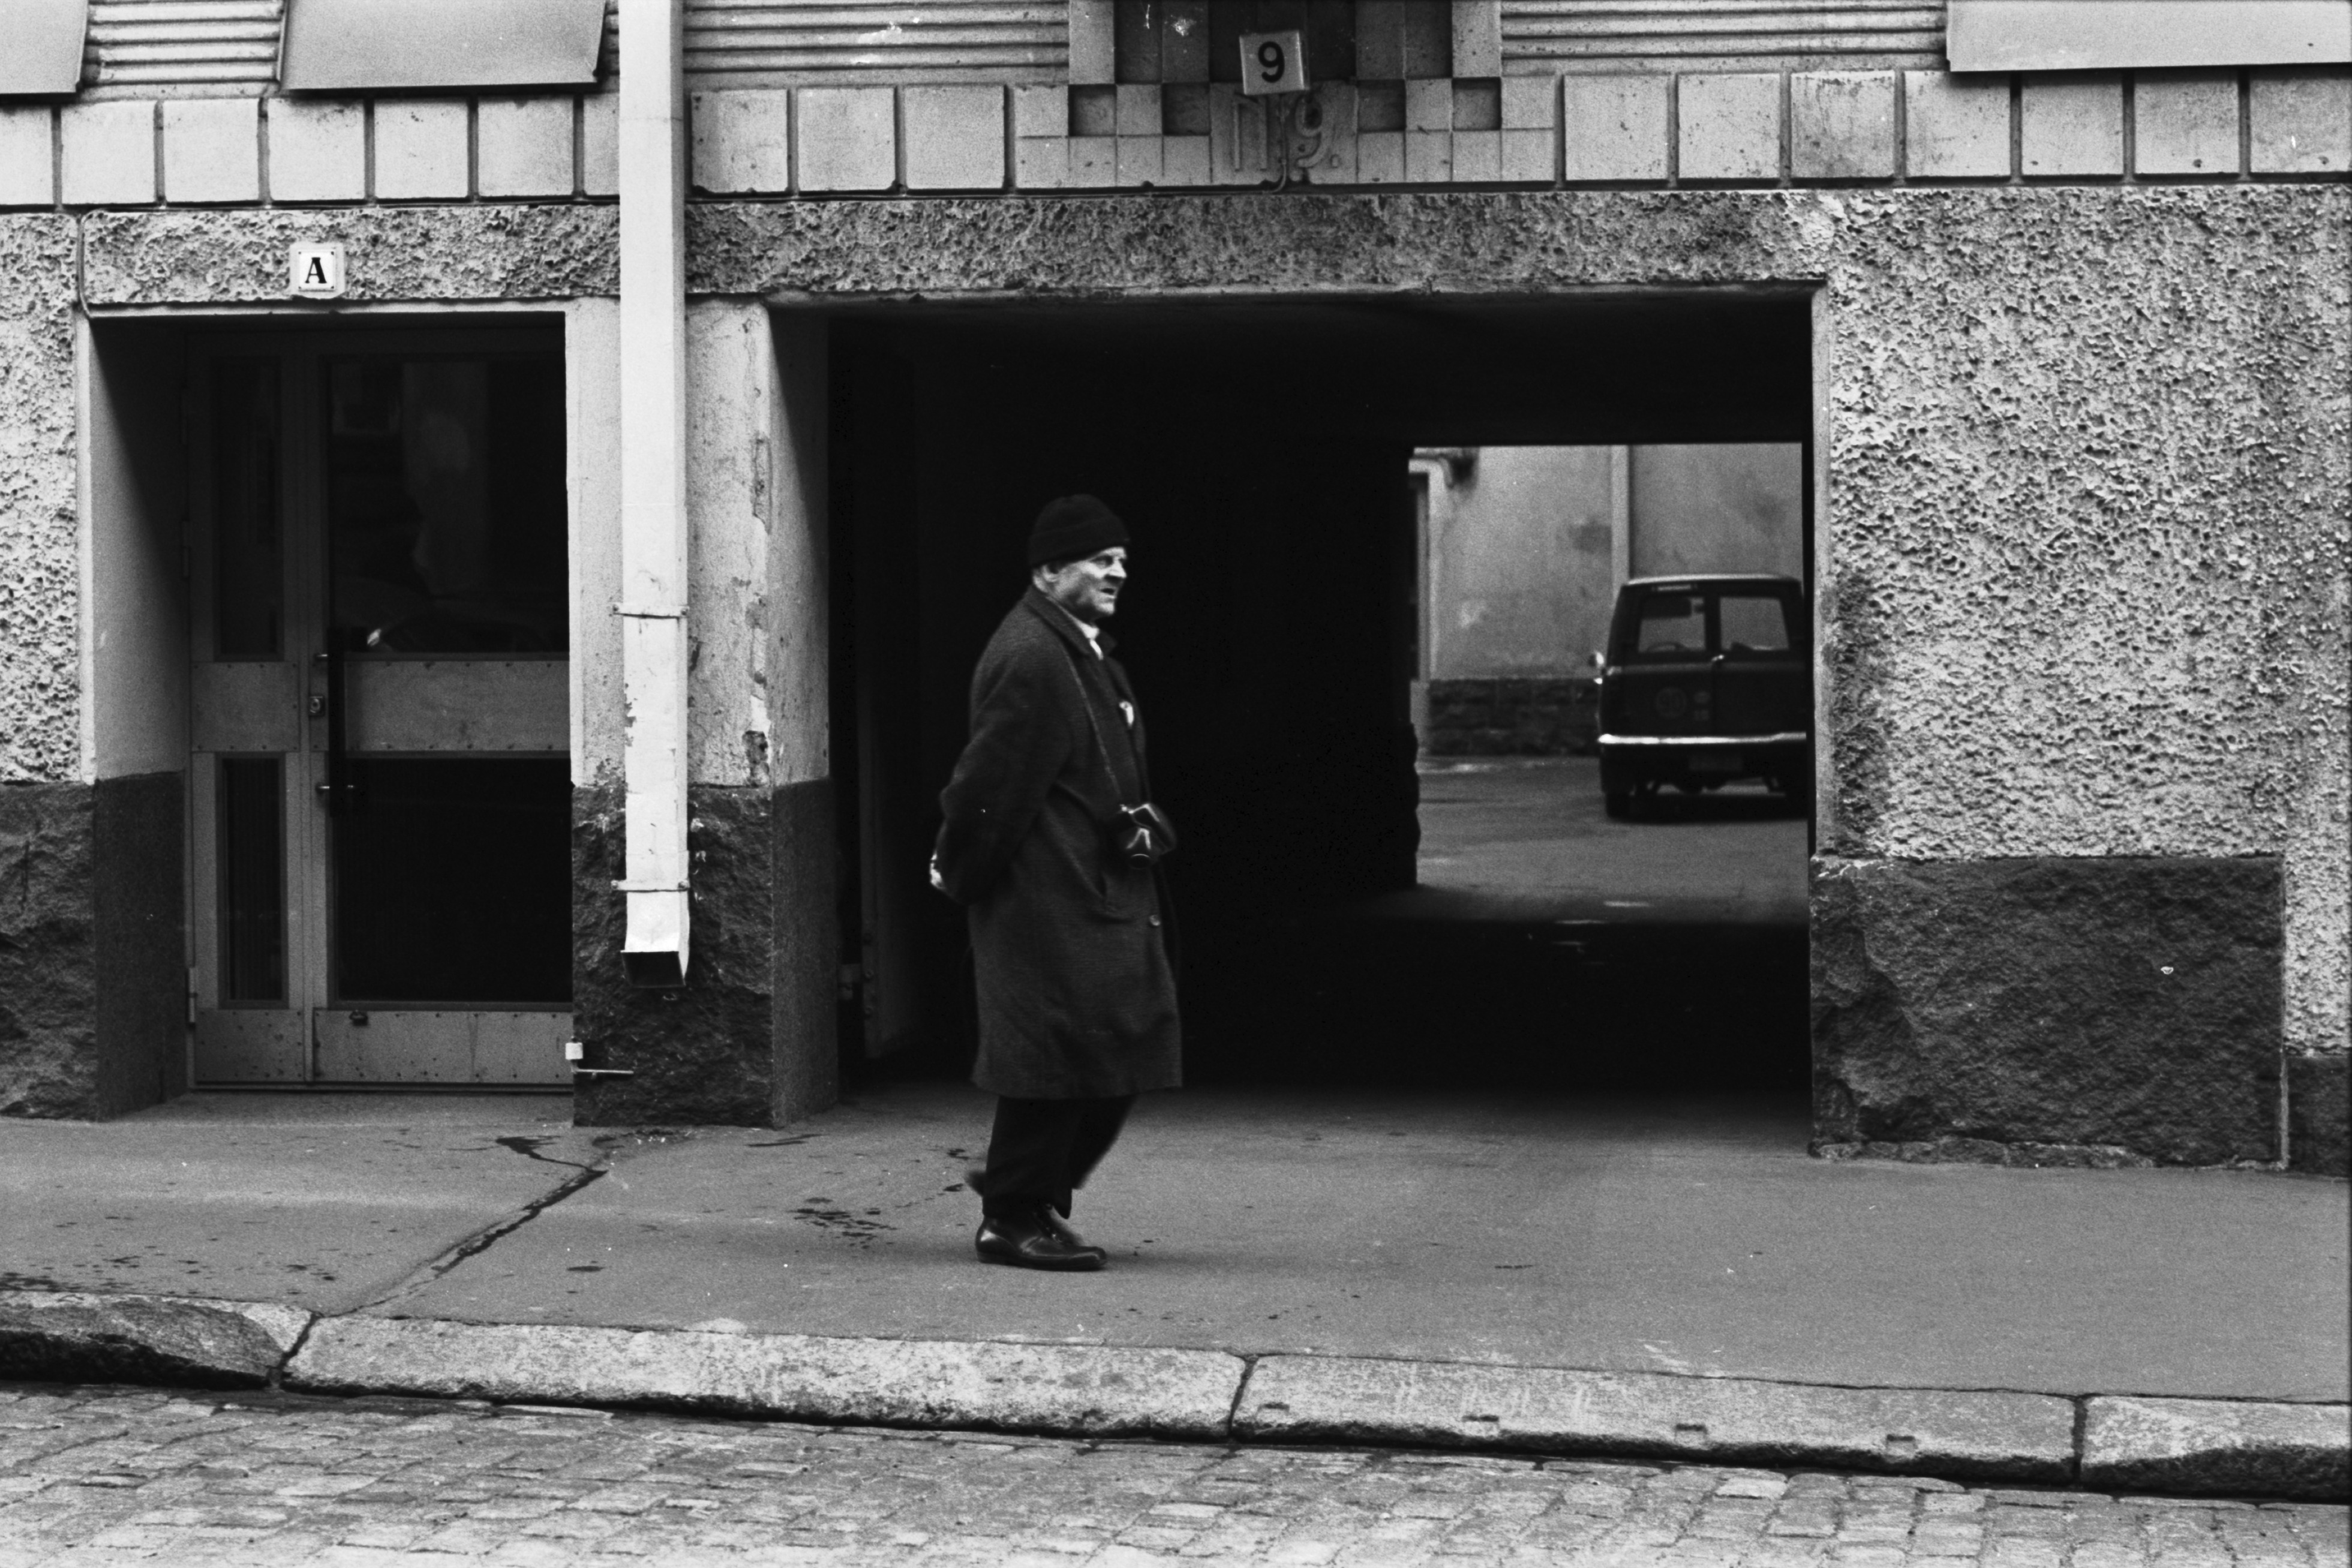 Kruununhaka, Liisankatu 9. Mies kulkemassa kamera kaulassa Liisankatu 9:n porttikäytävän kohdalla.